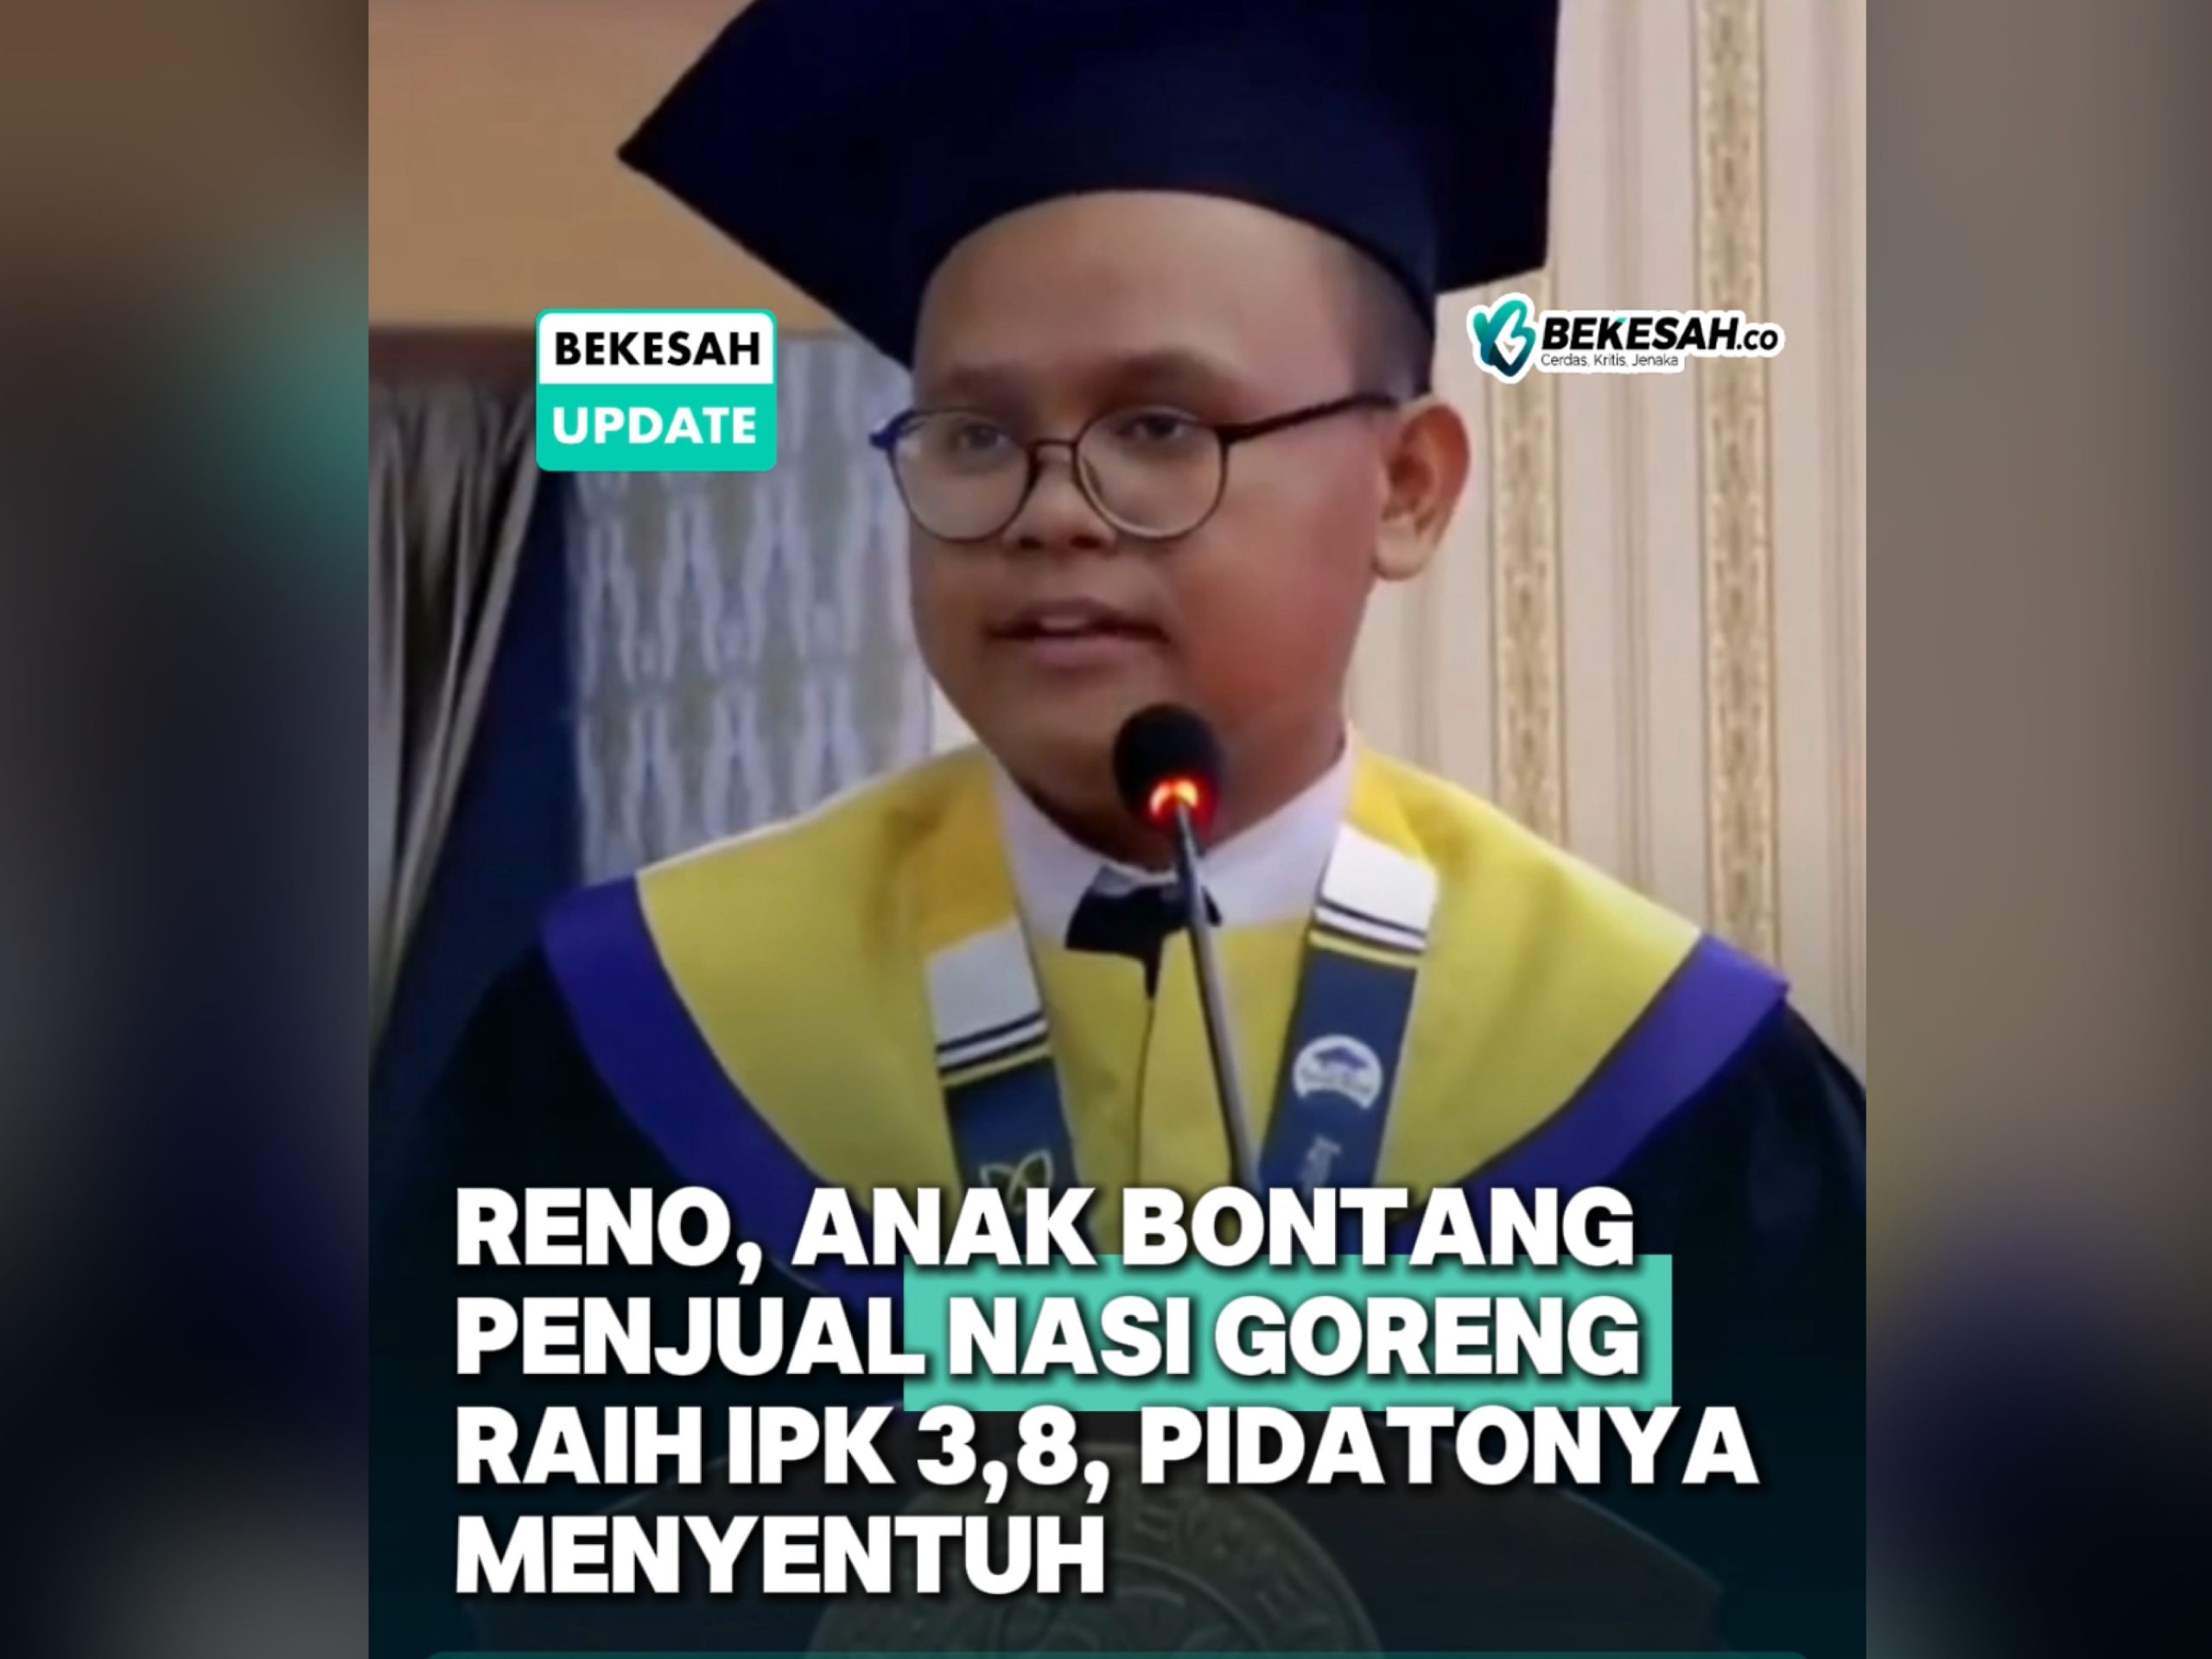 Kisah Rino, Anak Penjual Nasi Goreng Asal Bontang yang Lulus dengan IPK 3,8 Viral di Medsos